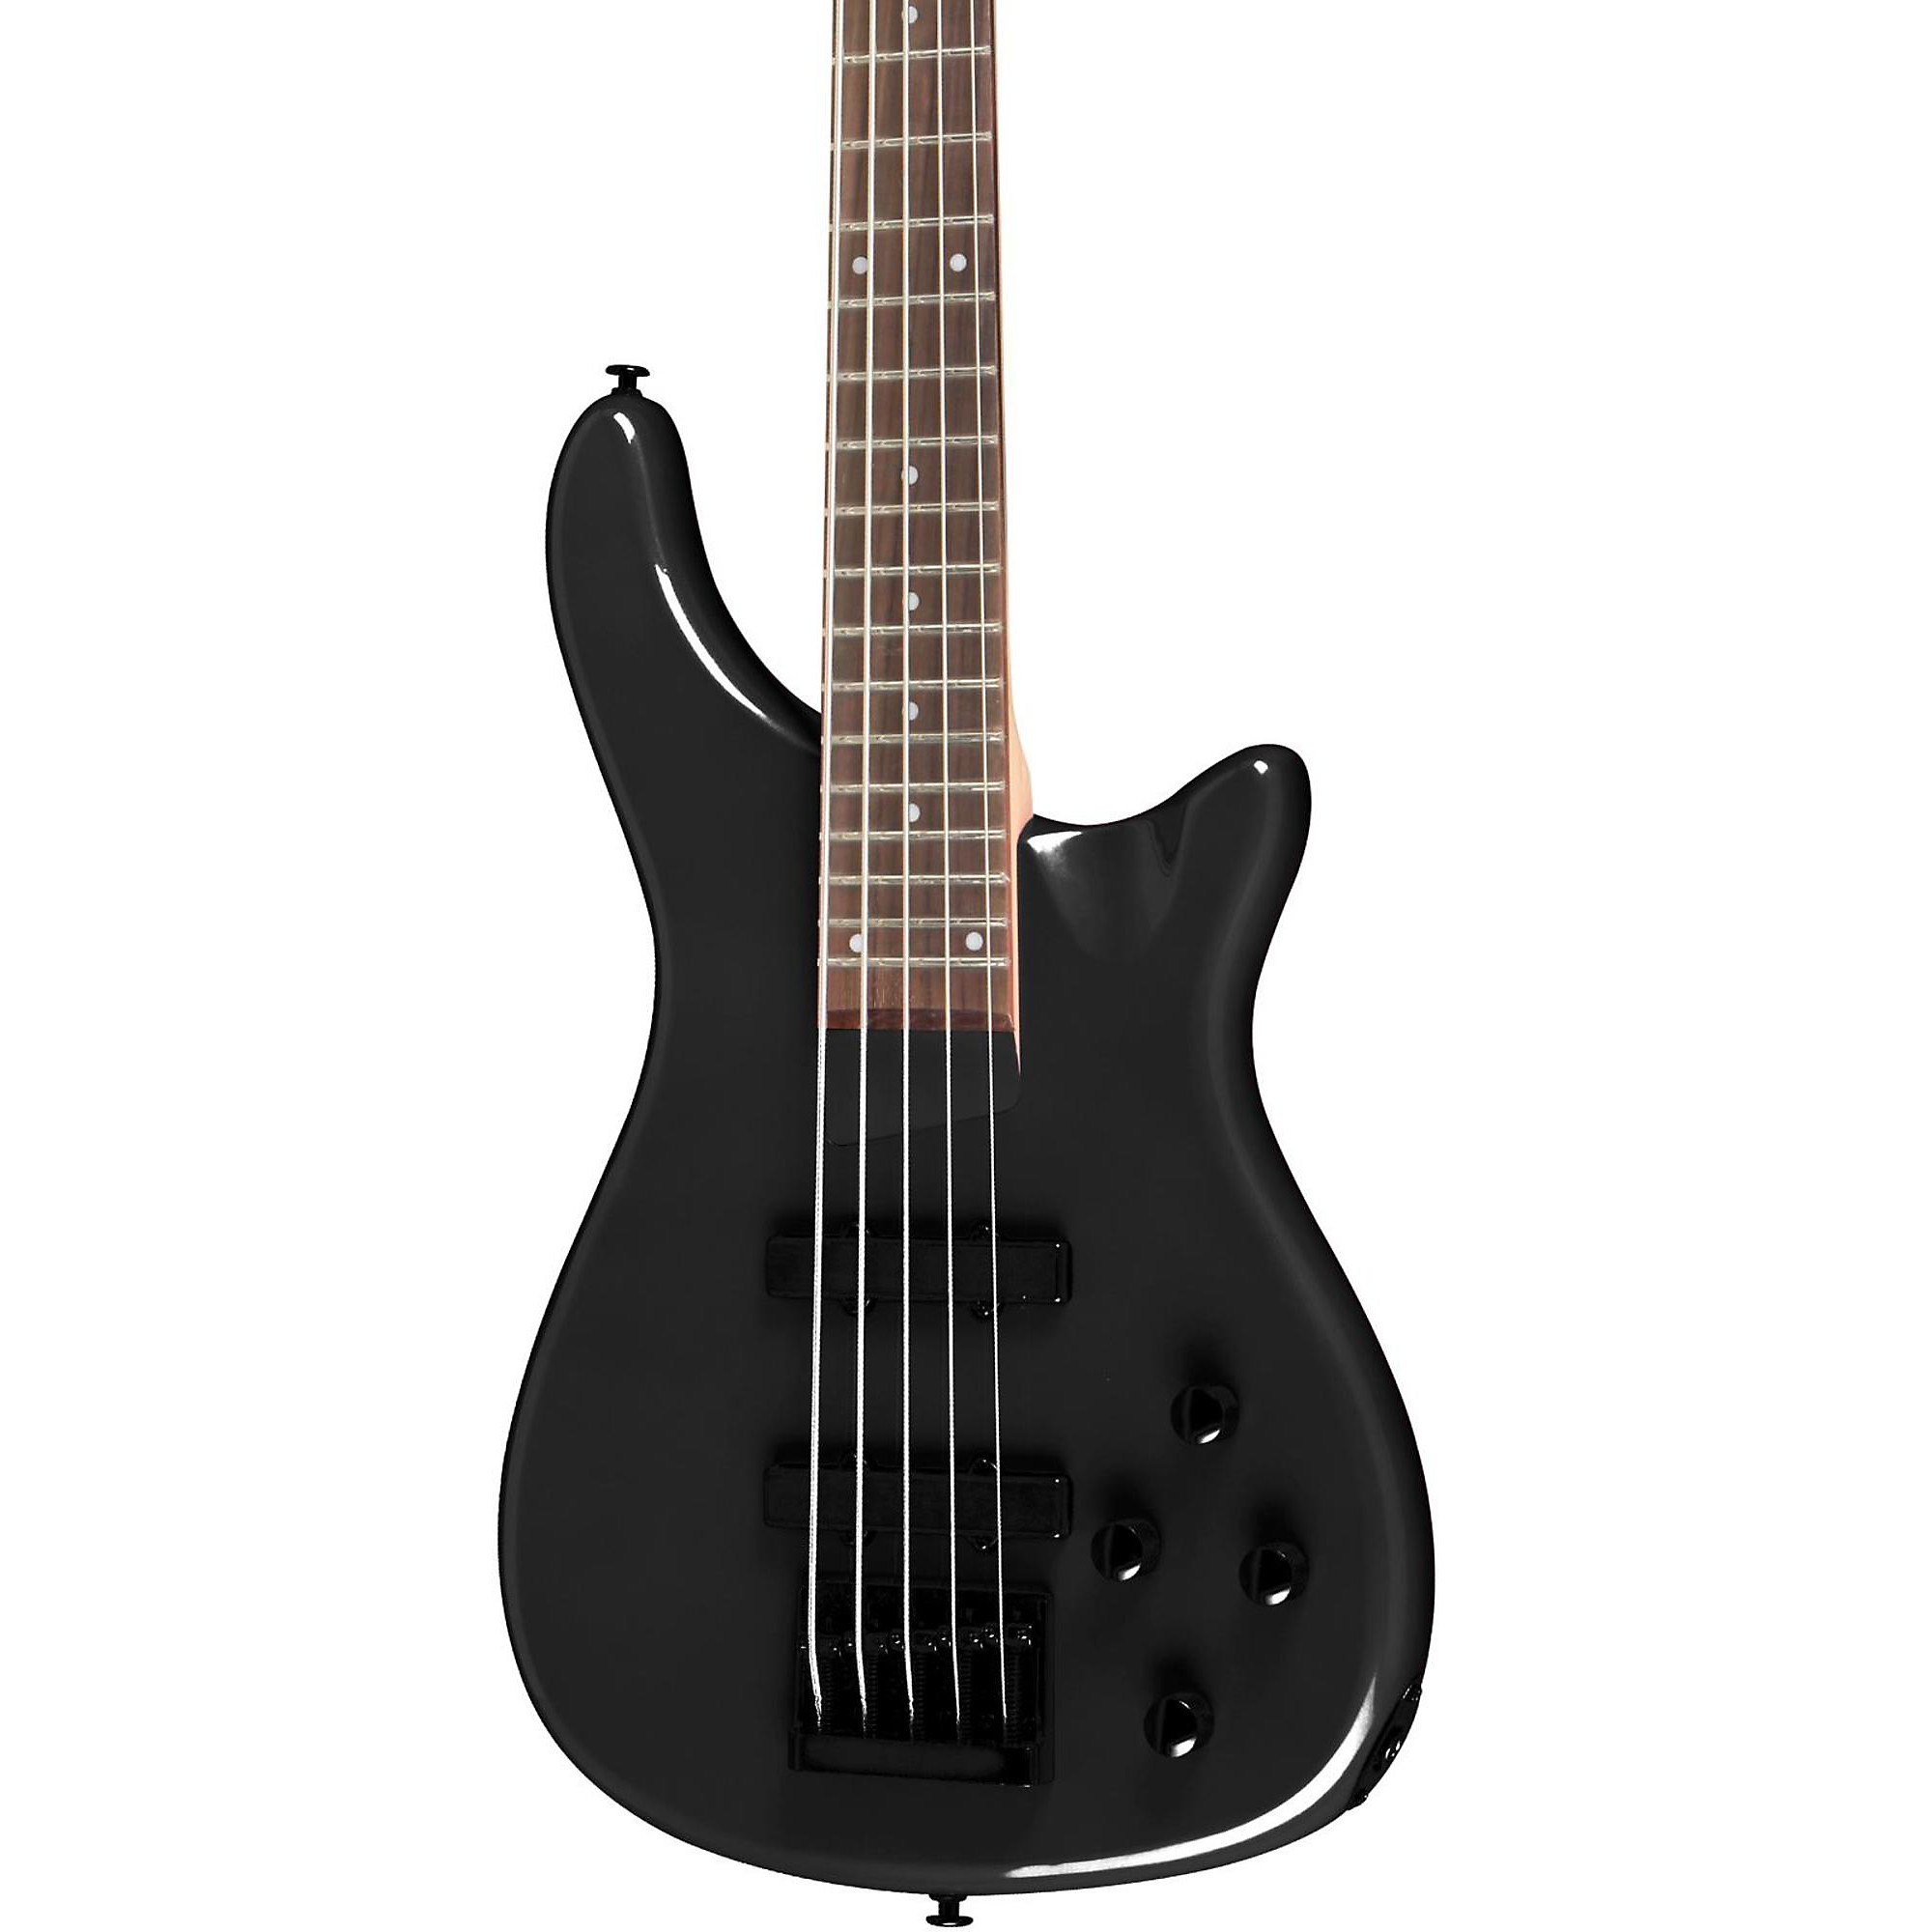 5-струнная электрическая бас-гитара Rogue LX205B Series III жемчужно-черного цвета